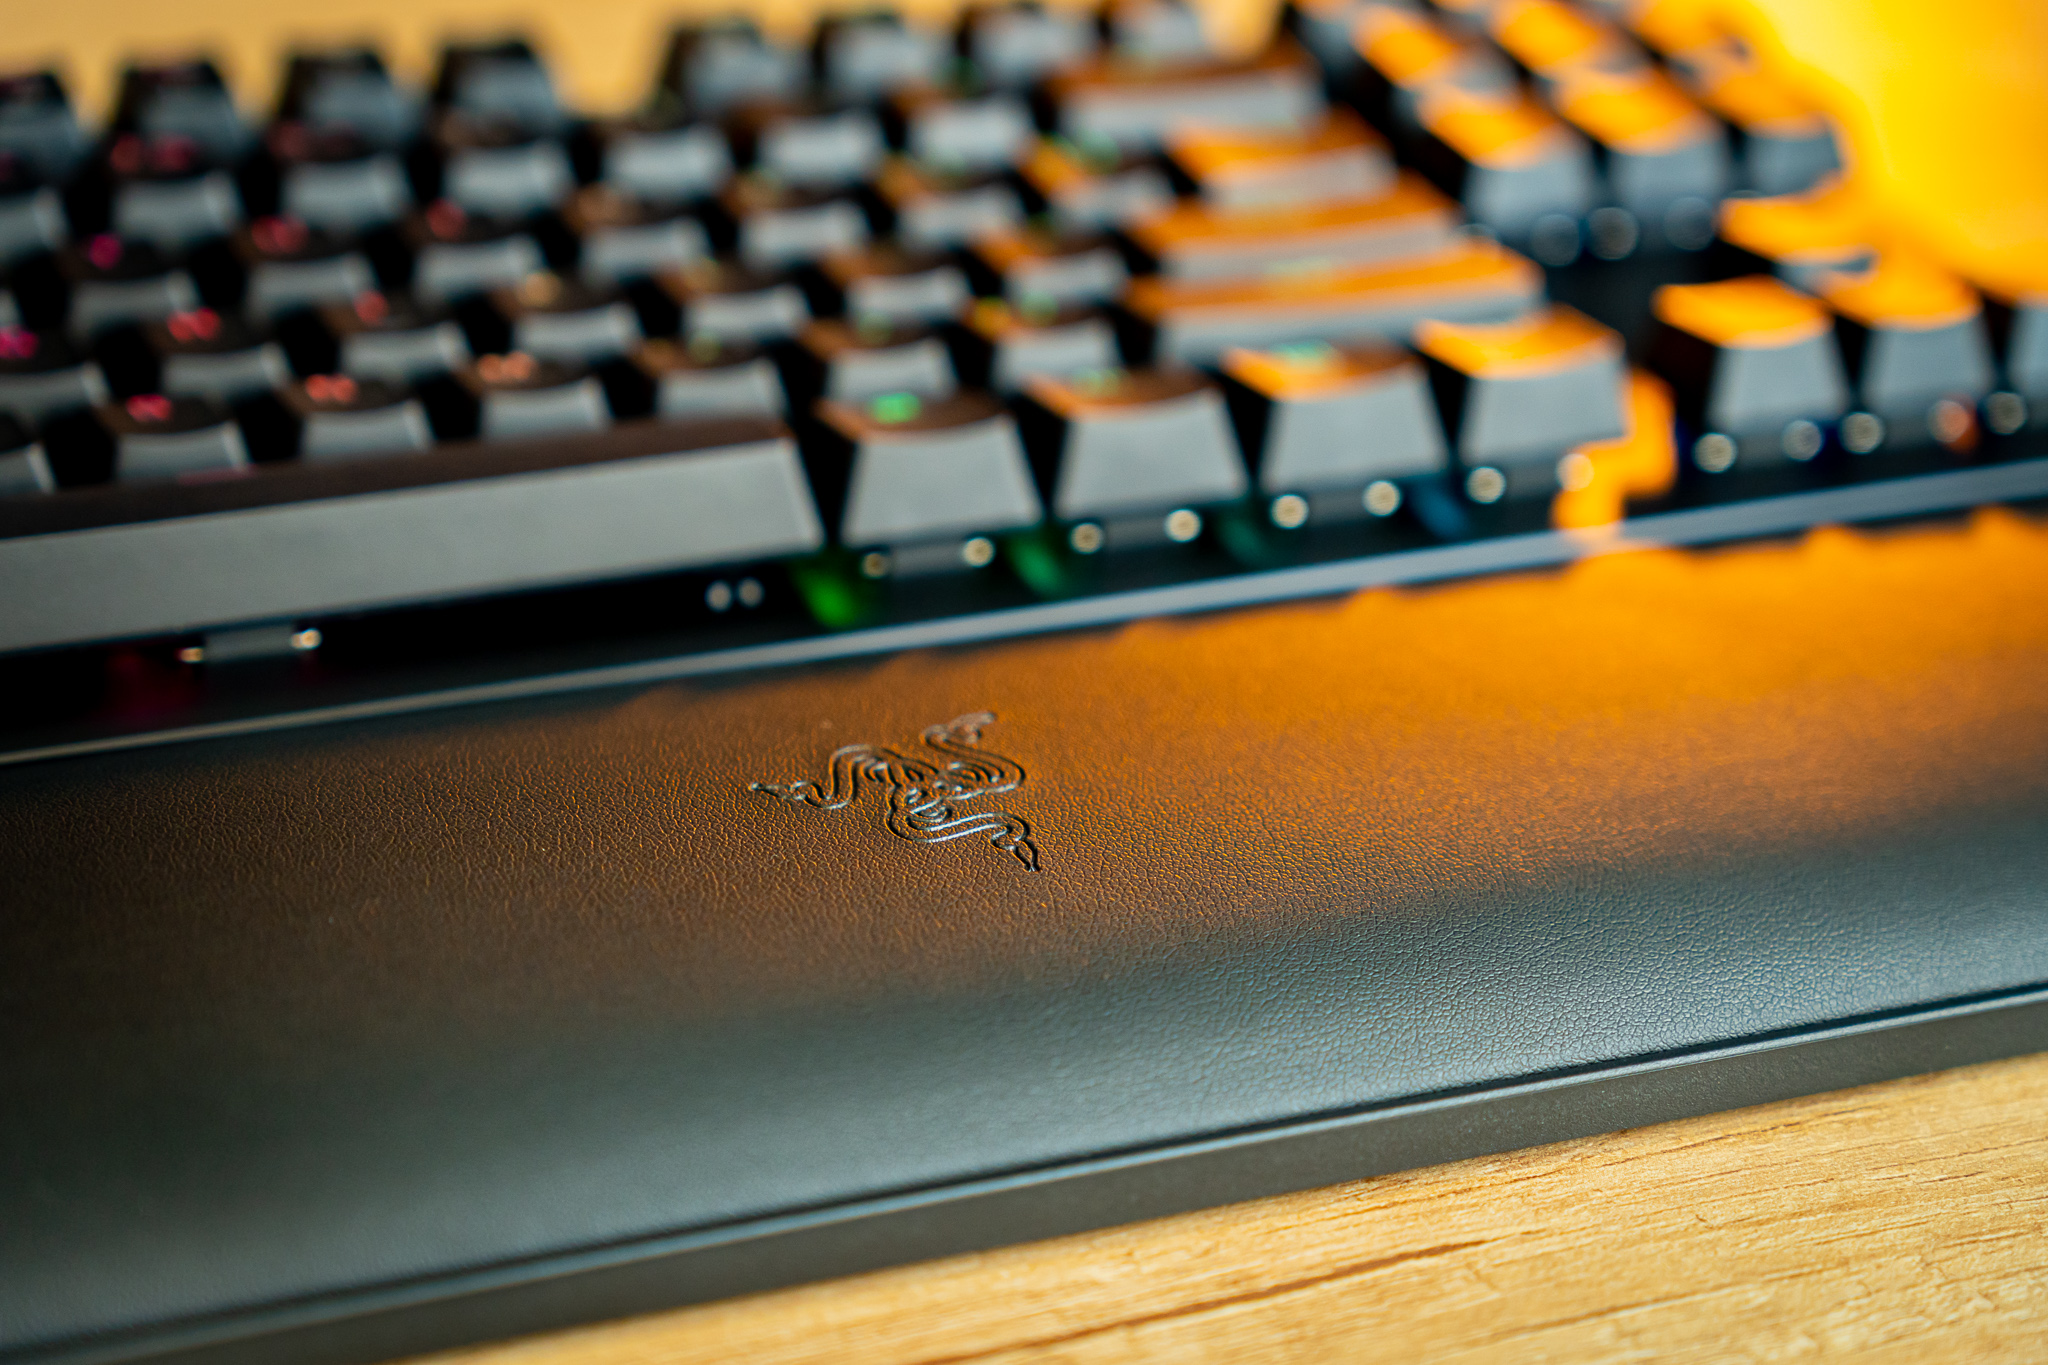 Razer Huntsman V2 TKL Review: A Fantastic Wired Keyboard